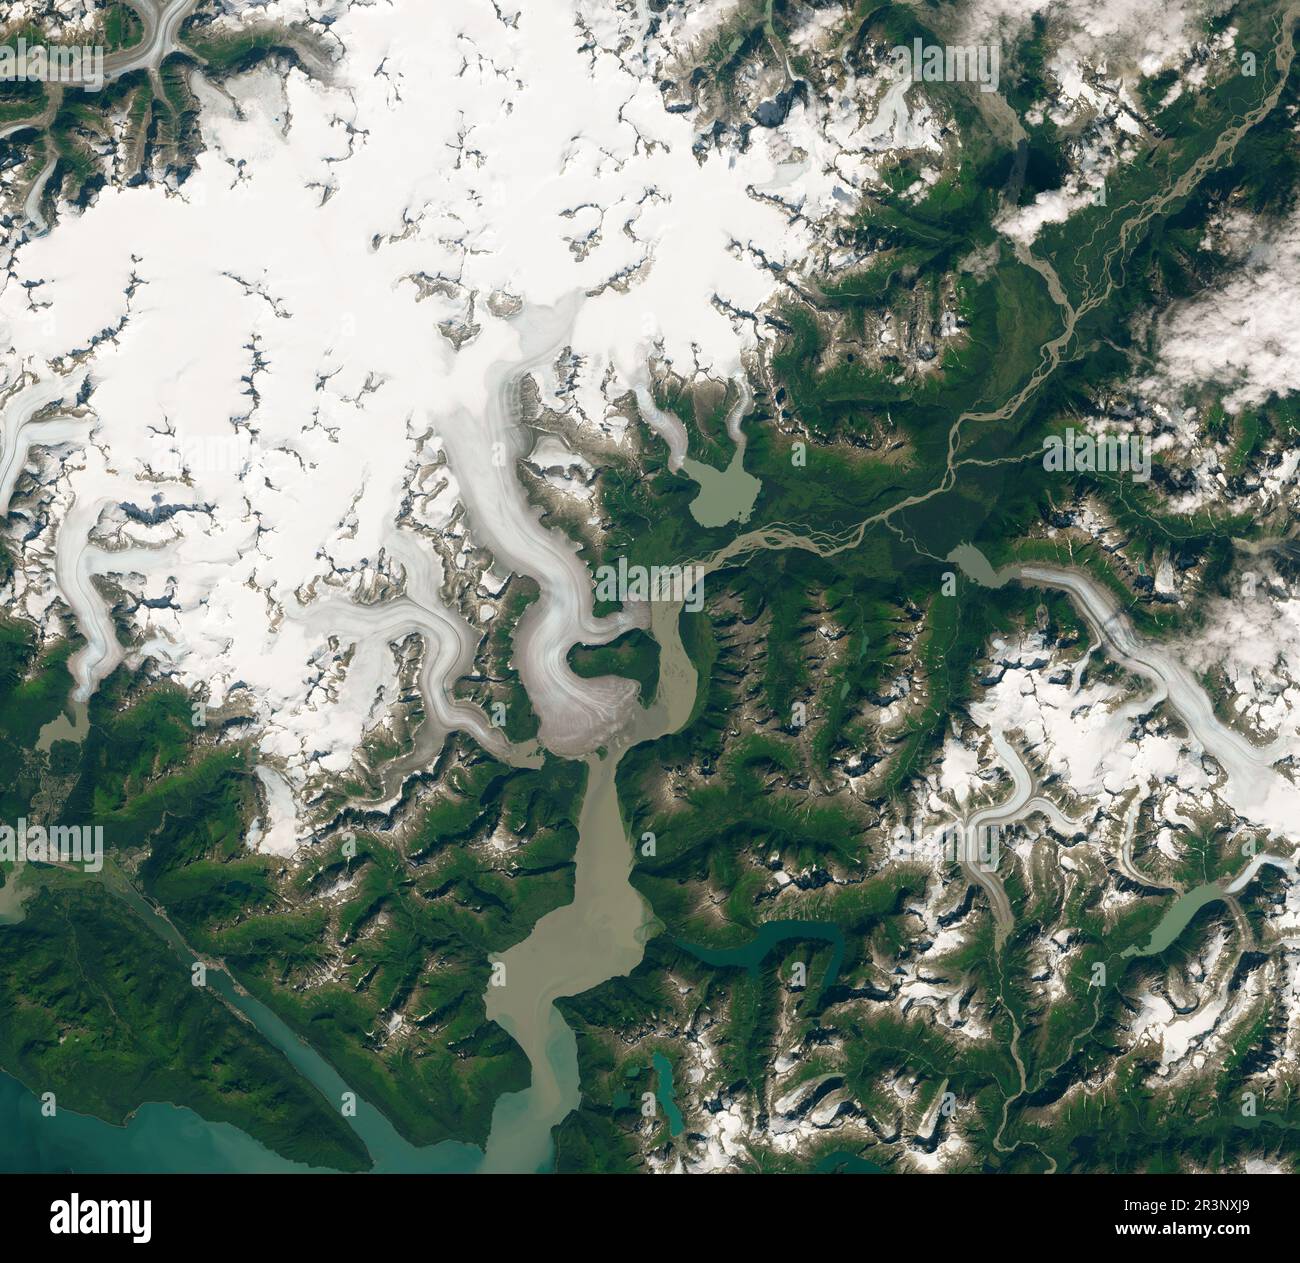 20 agosto 2014 - Alaska - da quasi quattro decenni, Mauri Pelto studia l'avanzamento e il ritiro dei ghiacciai di tutto il mondo. Li ha visti soccombere, uno per uno, all’aumento delle temperature. Dei 250 ghiacciai che ha osservato, tutti si erano ritirati (o accorciati) tranne uno: Il ghiacciaio Taku. Ora una nuova analisi mostra che Taku ha perso massa e si è Unito al resto dei ghiacciai in ritirata. Le immagini di colore naturale sopra mostrano il ghiacciaio il 20 agosto 2014 e il 9 agosto 2019. Le immagini sono state acquisite da Operational Land Imager su Landsat 8. Anche se sottile, i cambiamenti sono più visibili a t Foto Stock